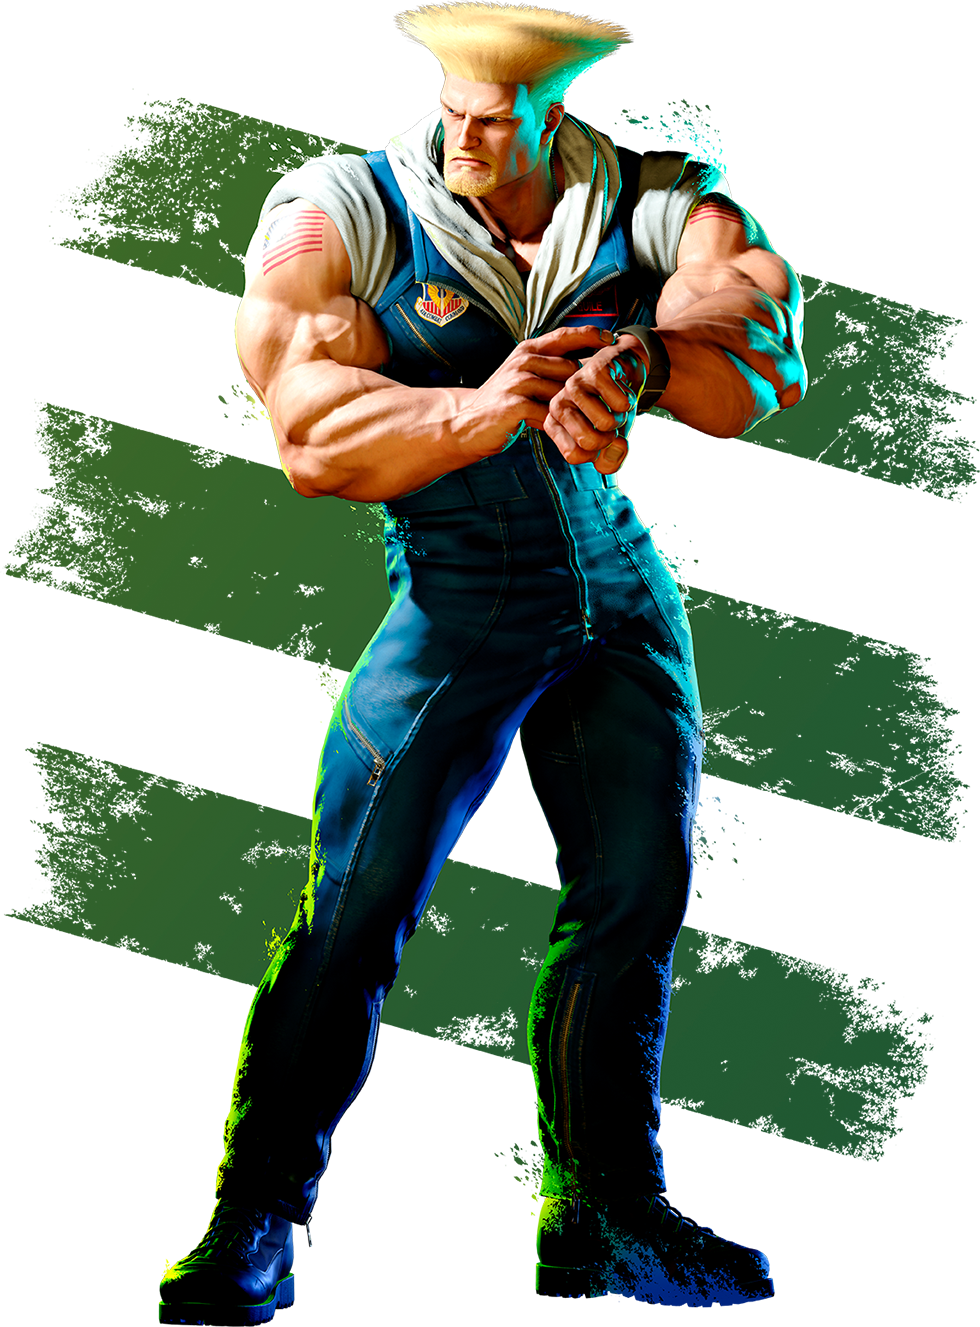 Lutador americano Guile retorna em Street Fighter 6 - tudoep